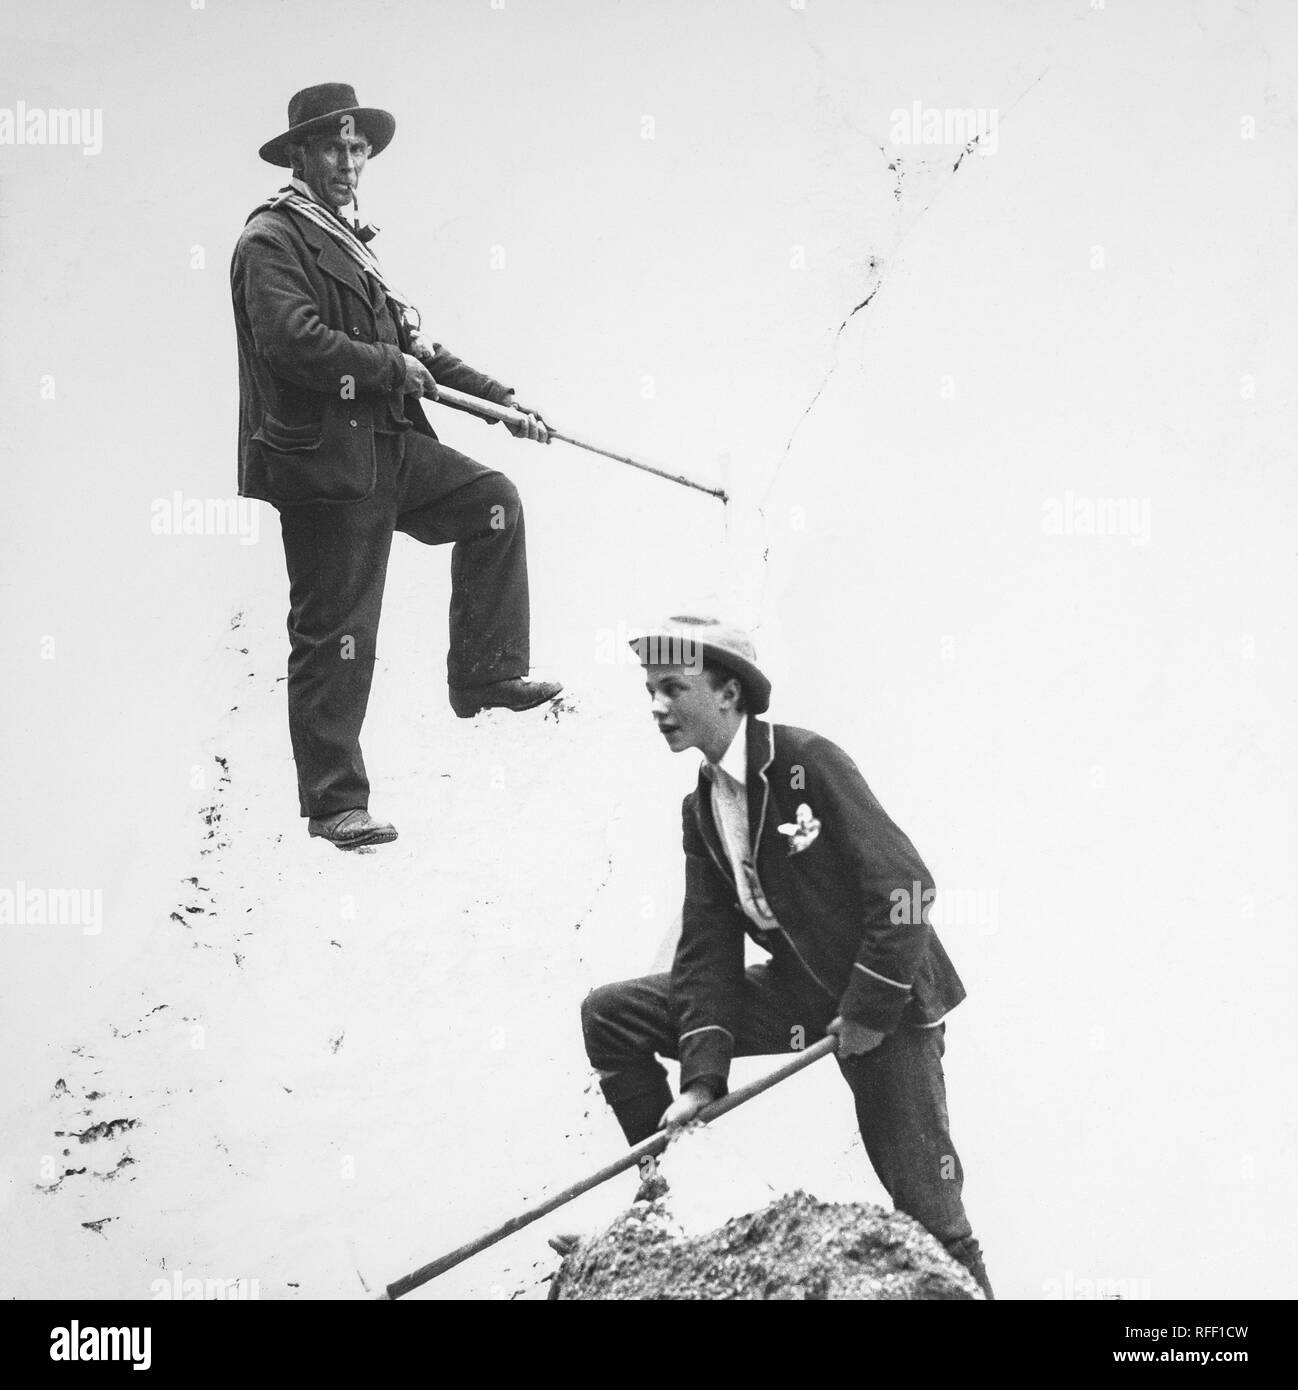 Un palazzo di fine ottocento fotografia in bianco e nero che mostra la famosa Svizzera guida alpina, Peter Kaufmann. Peter Kaufmann (17 gennaio 1858 a Grindelwald - 14 ottobre 1924, a Grindelwald, all'età di 66 anni) era una montagna in Svizzera guida durante l'età d'argento di alpinismo (1865-1882) e agli inizi del XX secolo, che hanno guidato i dilettanti, esperti scalatori e diversi notabili attraverso i ghiacciai su valichi di montagna e le vette delle alpi svizzere, Canadian Rockies e Selkirks. Un giovane maschio può essere visto sul pendio di neve appena al di sotto di lui. Foto Stock